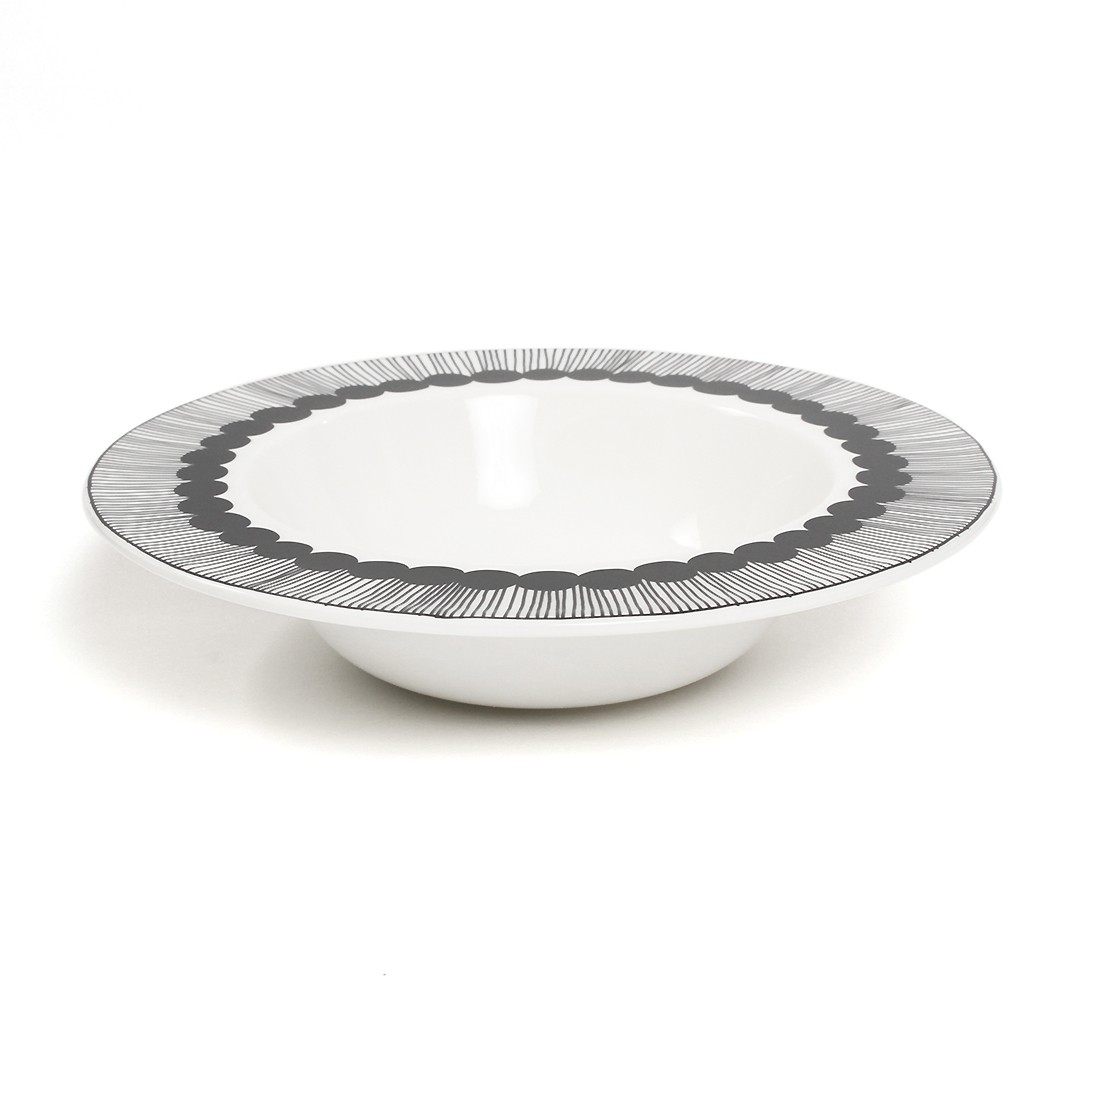 マリメッコ シイルトラプータルハ ディープ プレート 20cm 20センチ marimekko SIIRTOLAPUUTARHA deep plate  黒 皿 食器 陶磁器 深皿 キッチン おしゃれ